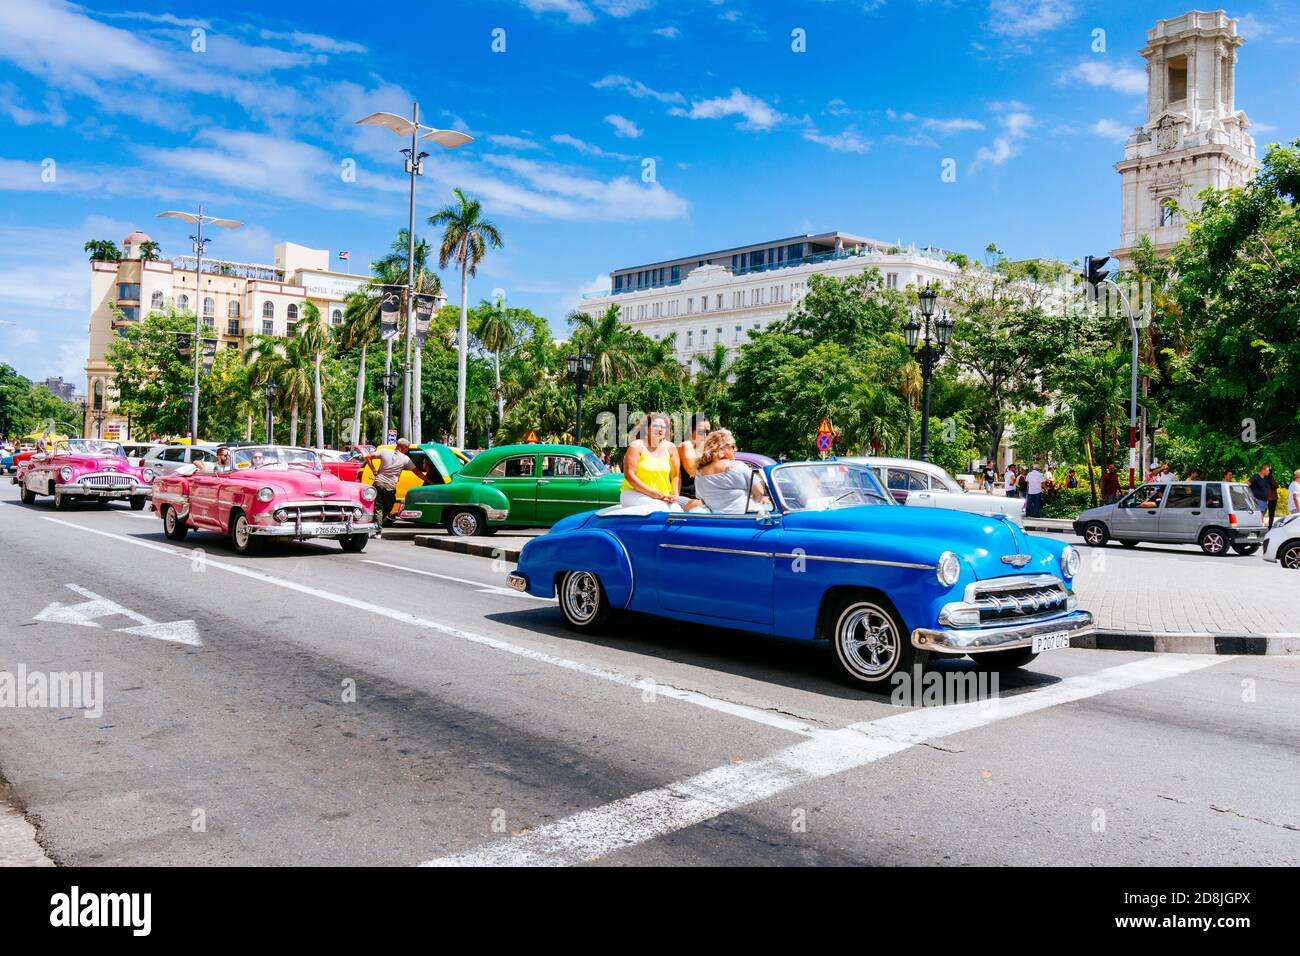 Les touristes féminins voyagent dans un taxi vintage - Almendrón - autour du Parc Central - Parque Central. La Havane. Cuba, Amérique latine et Caraïbes Banque D'Images